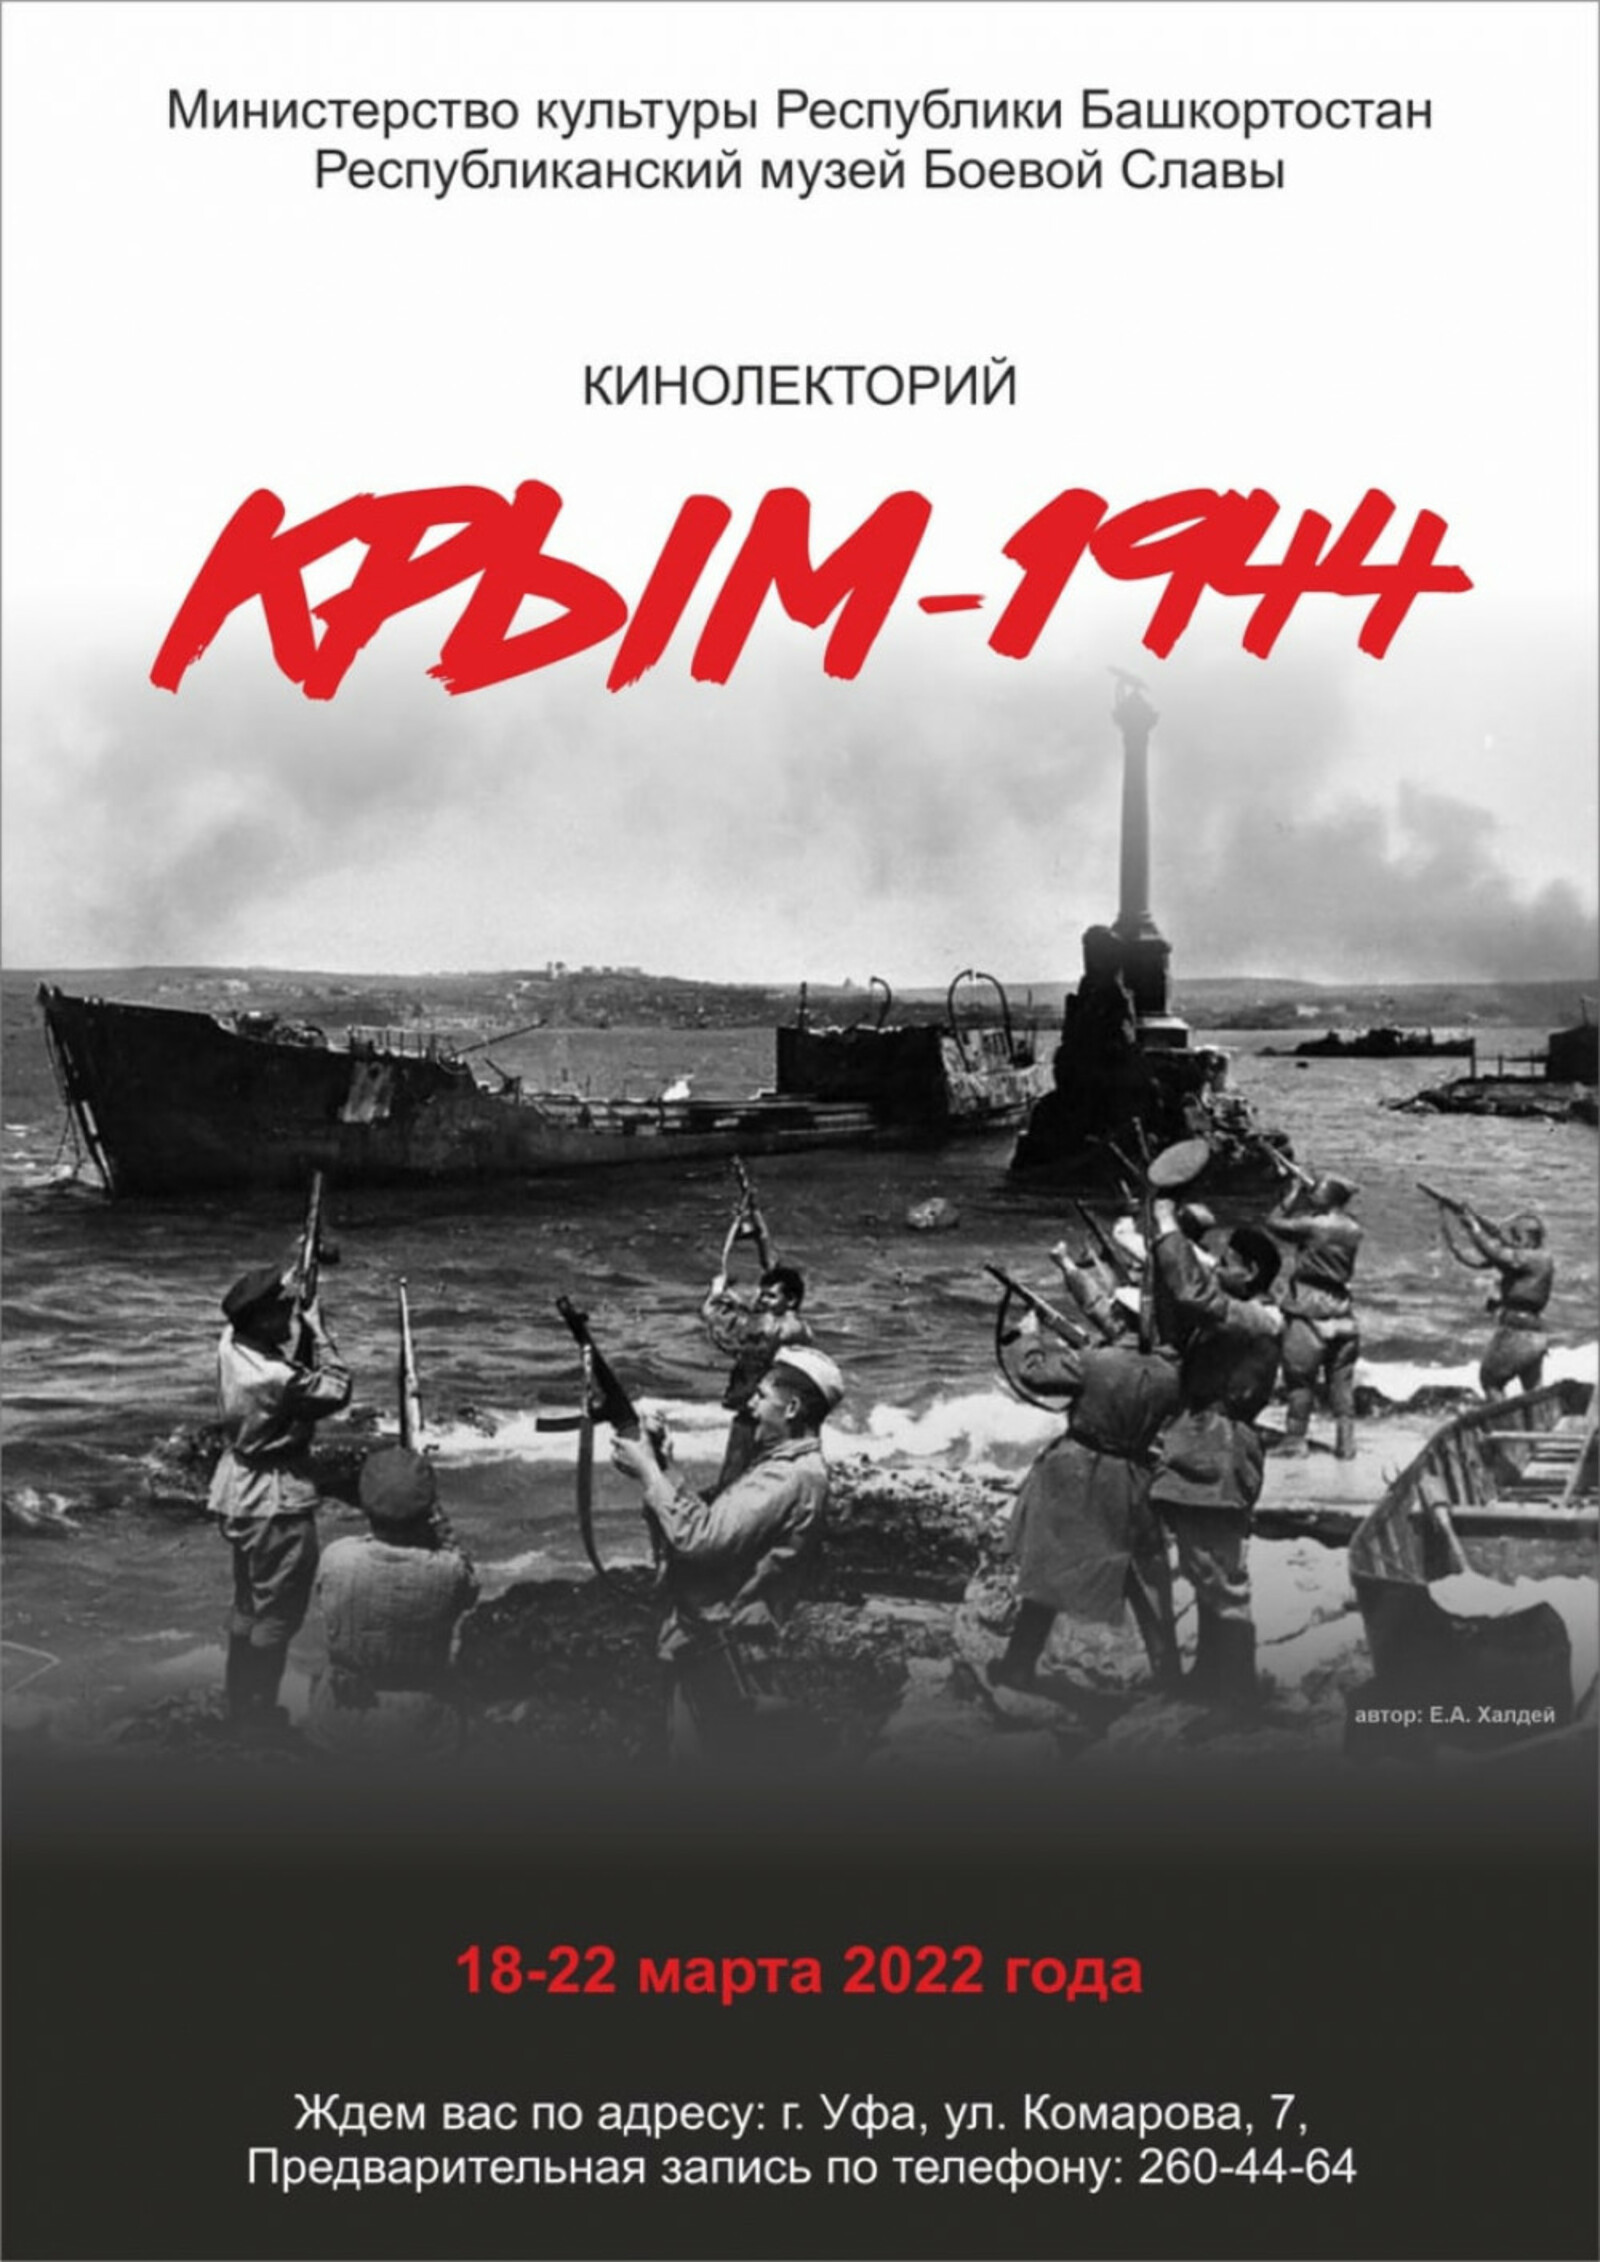 В Уфе в Республиканском музее Боевой Славы проходит кинолекторий «Крым - 1944»